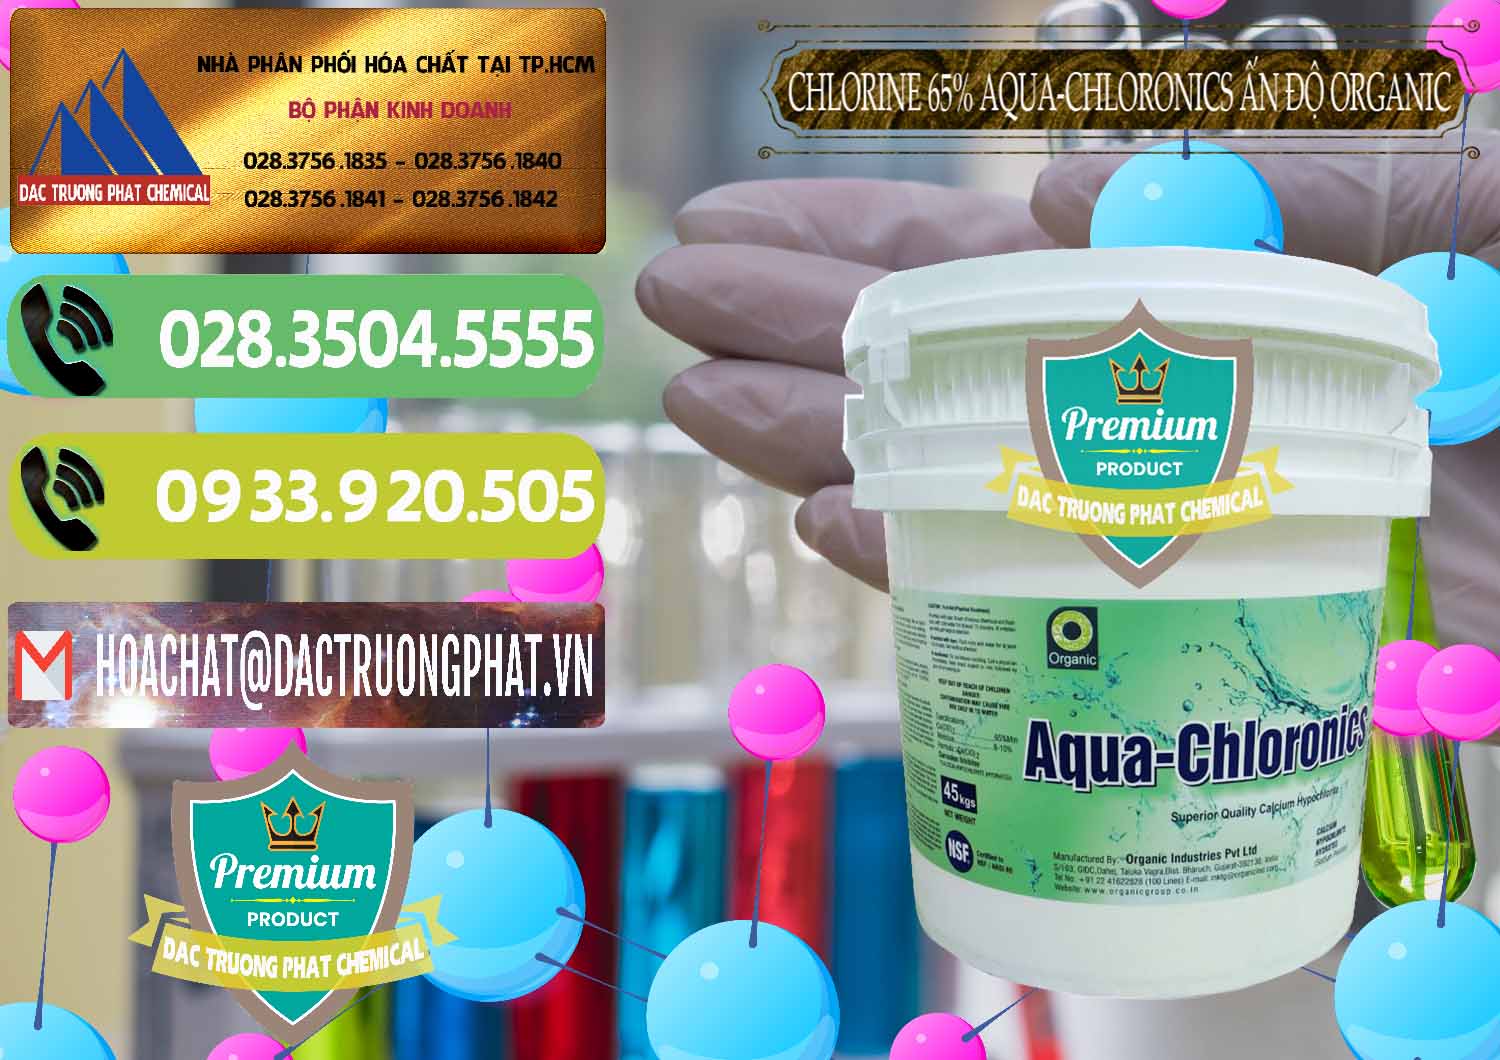 Chuyên cung cấp _ bán Chlorine – Clorin 65% Aqua-Chloronics Ấn Độ Organic India - 0210 - Chuyên phân phối _ cung cấp hóa chất tại TP.HCM - hoachatmientay.vn